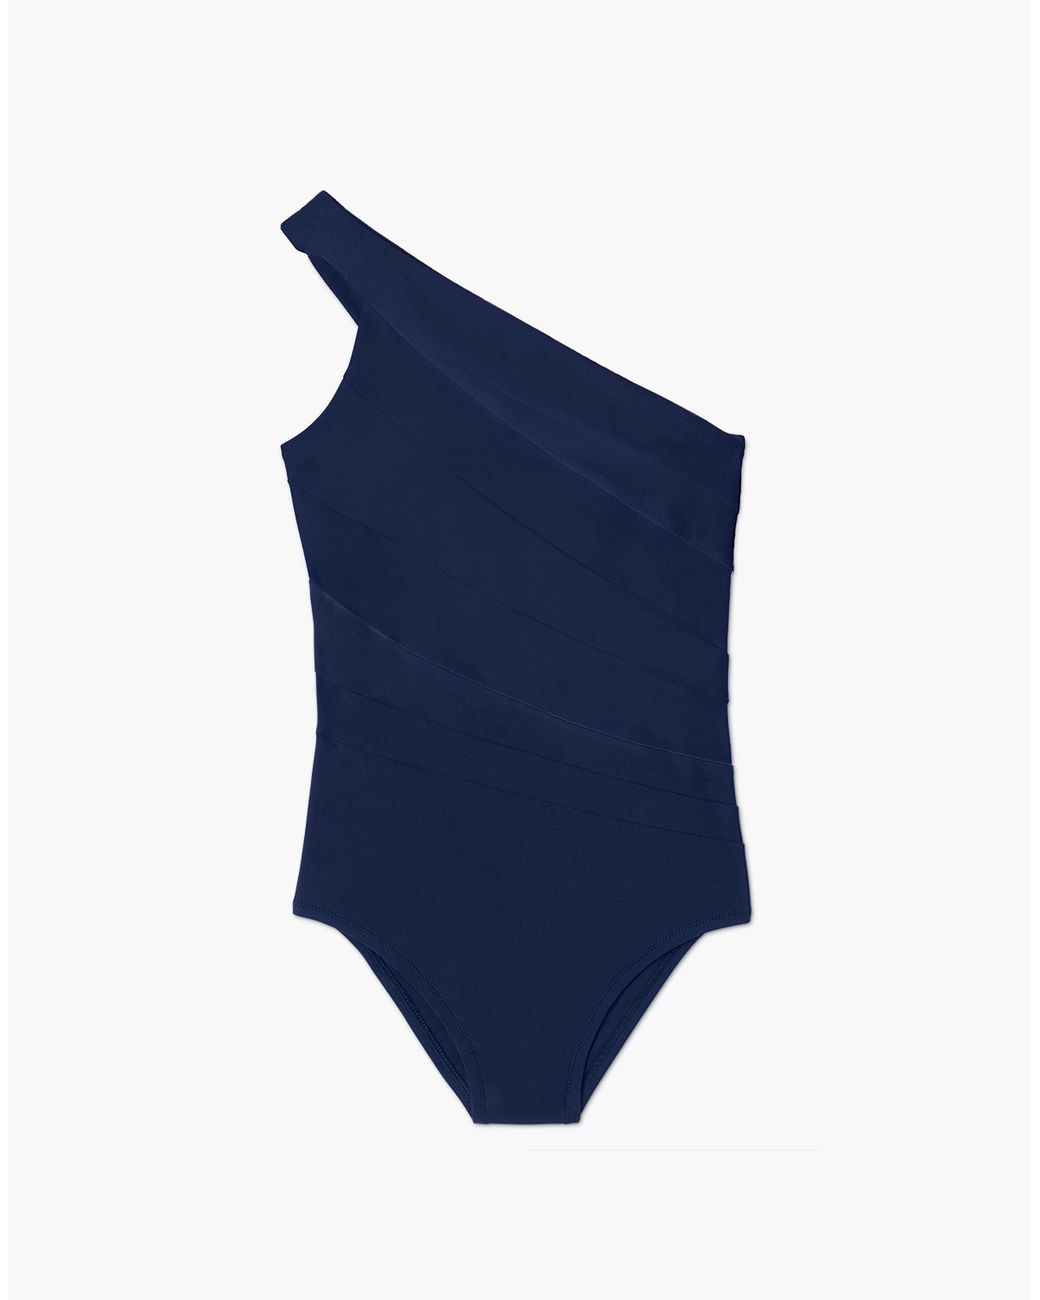 MW Summersalt® Sidestroke One-piece Swimsuit in Blue